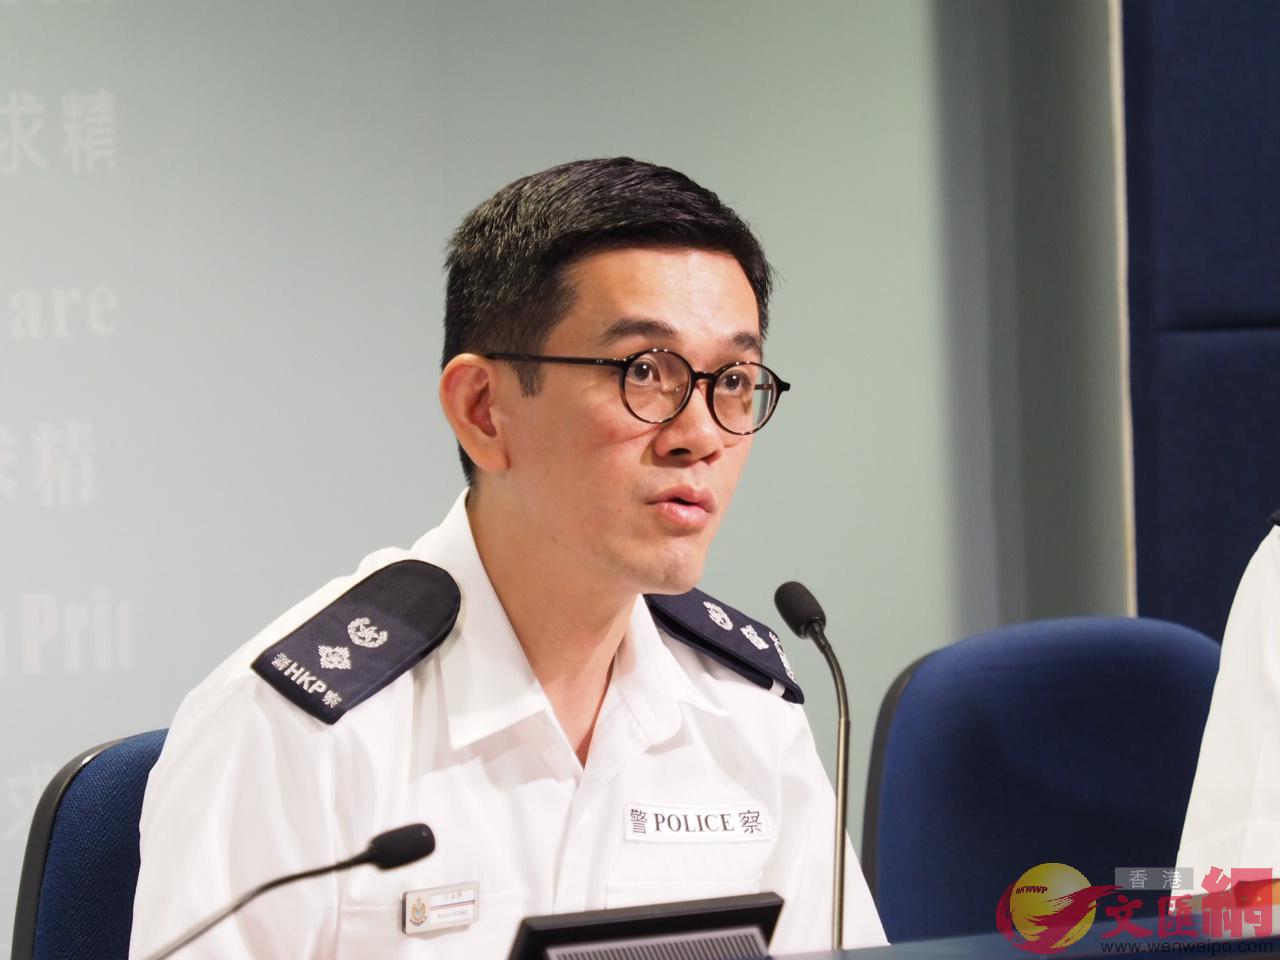 警察公共關係科高級警司江永祥批評暴徒今早噴污校巴的惡行C